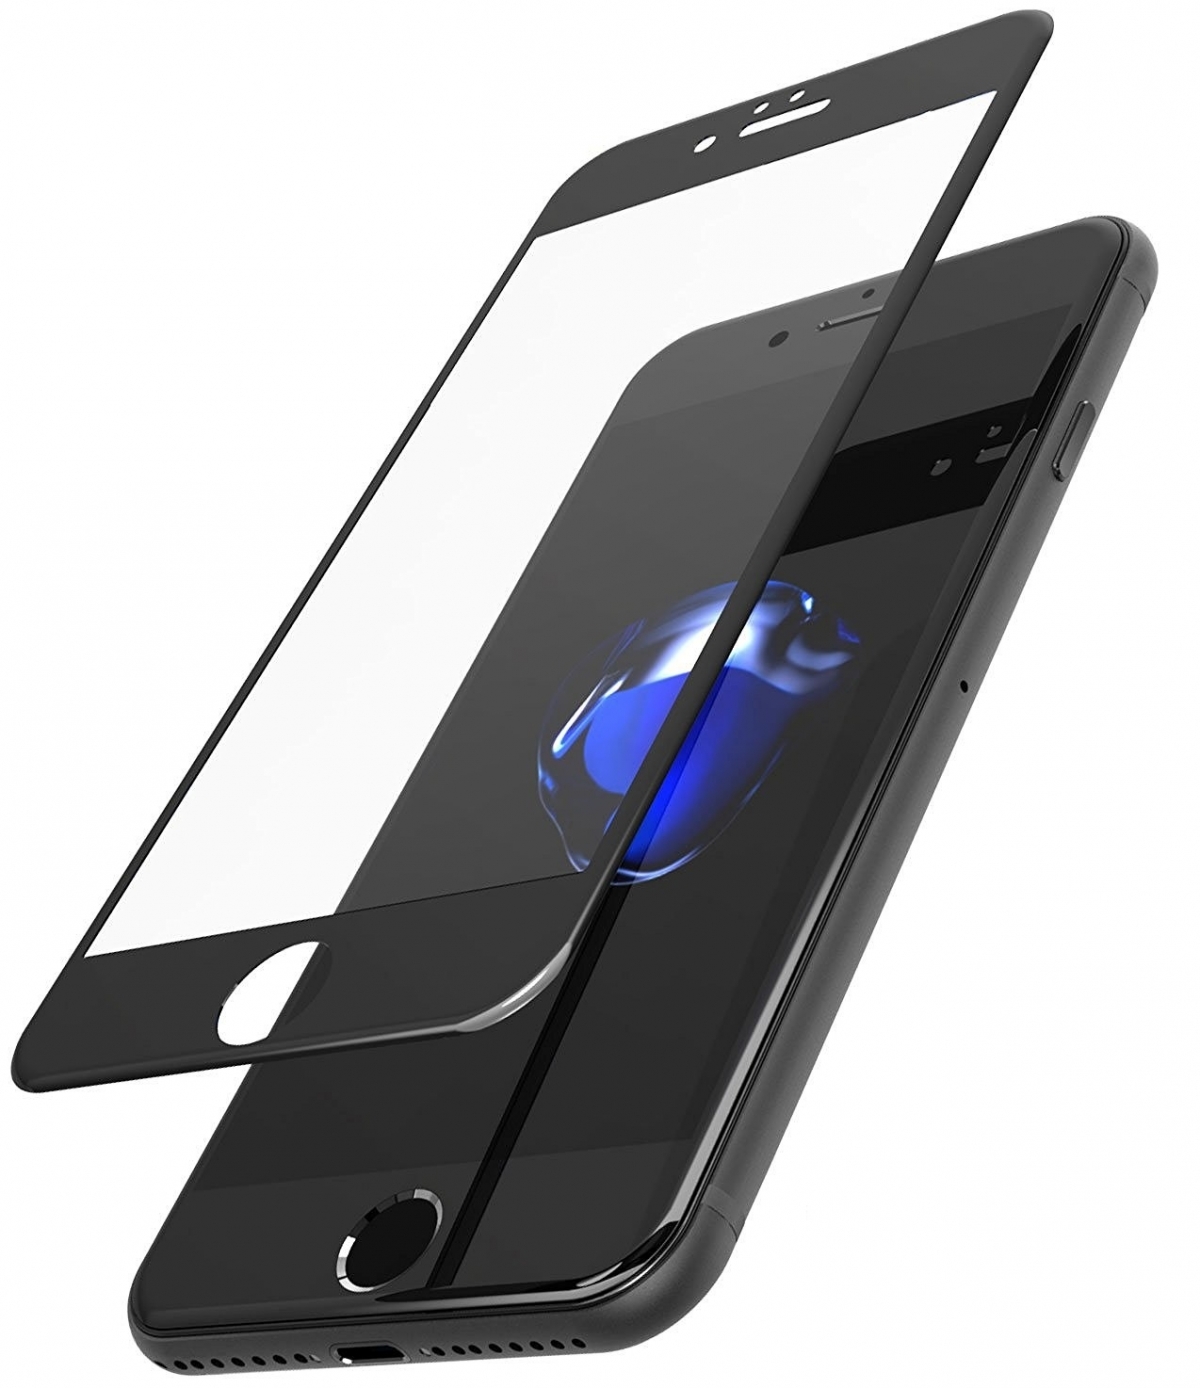 Защитное стекло Lito (премиальное качество) "5D" для APPLE iPhone 7/8 (4.7"), цвет канта черный.